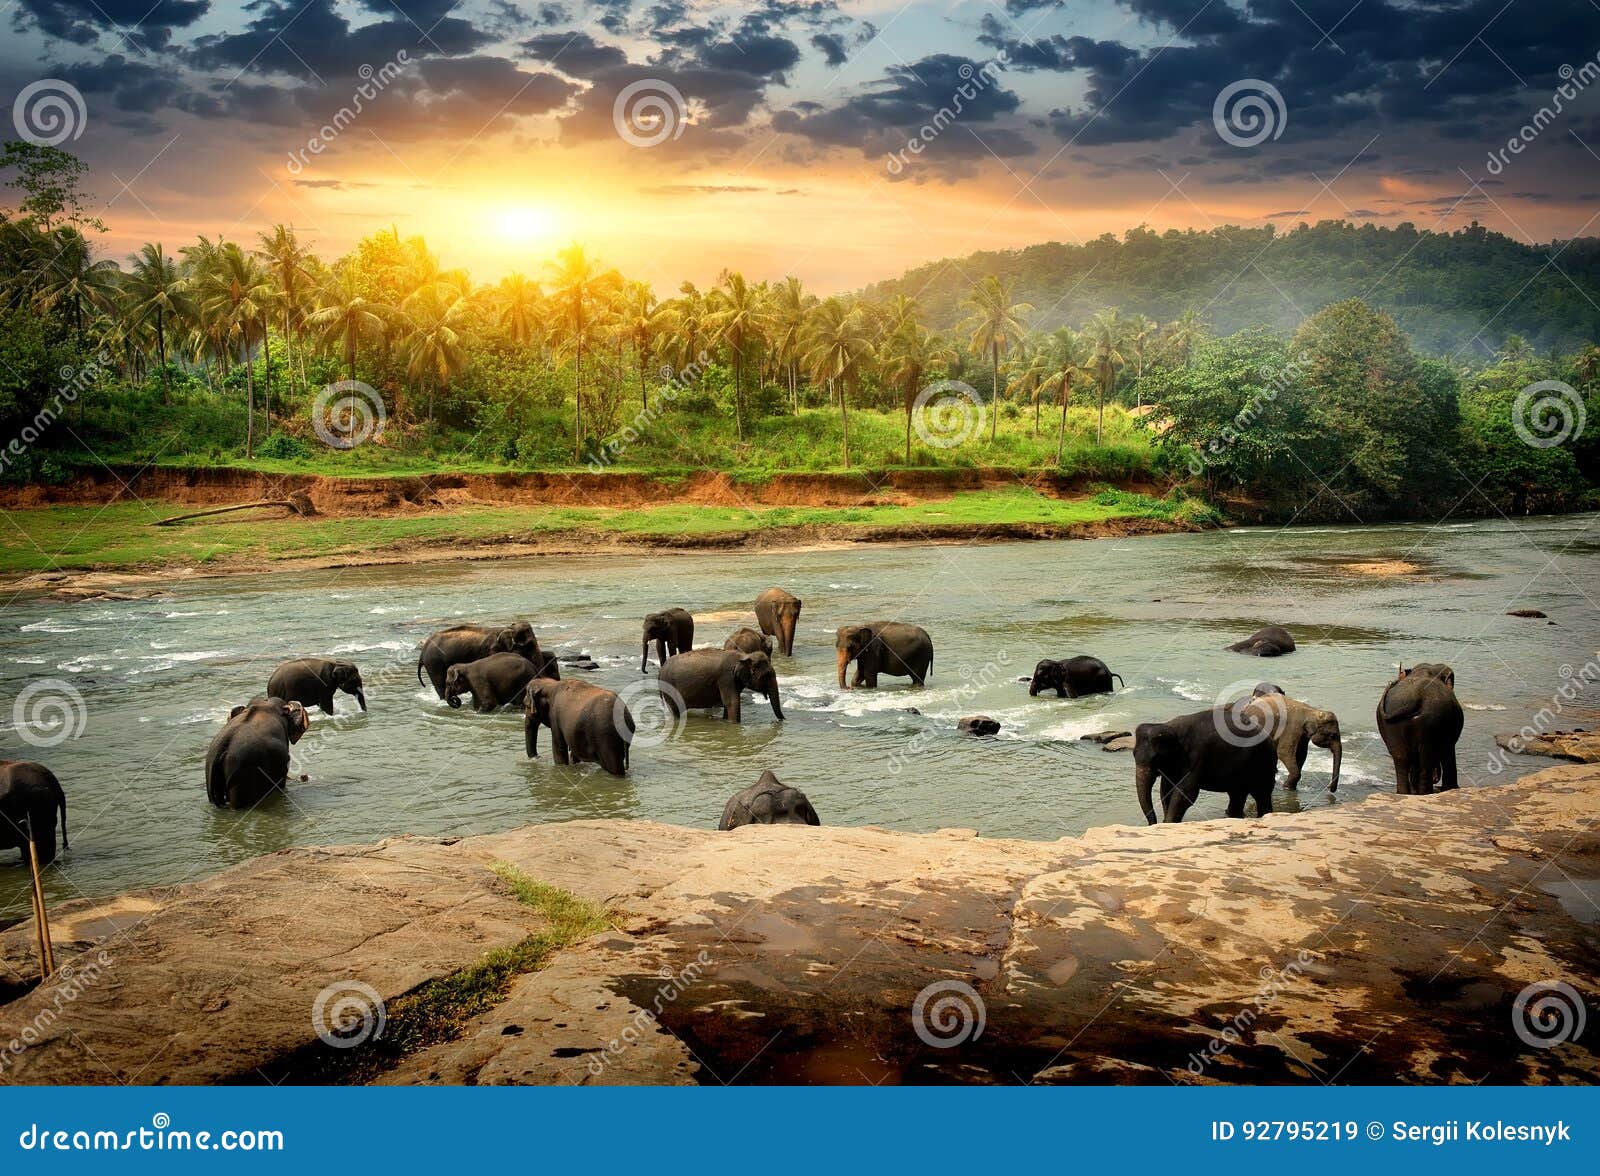 elephants in jungle